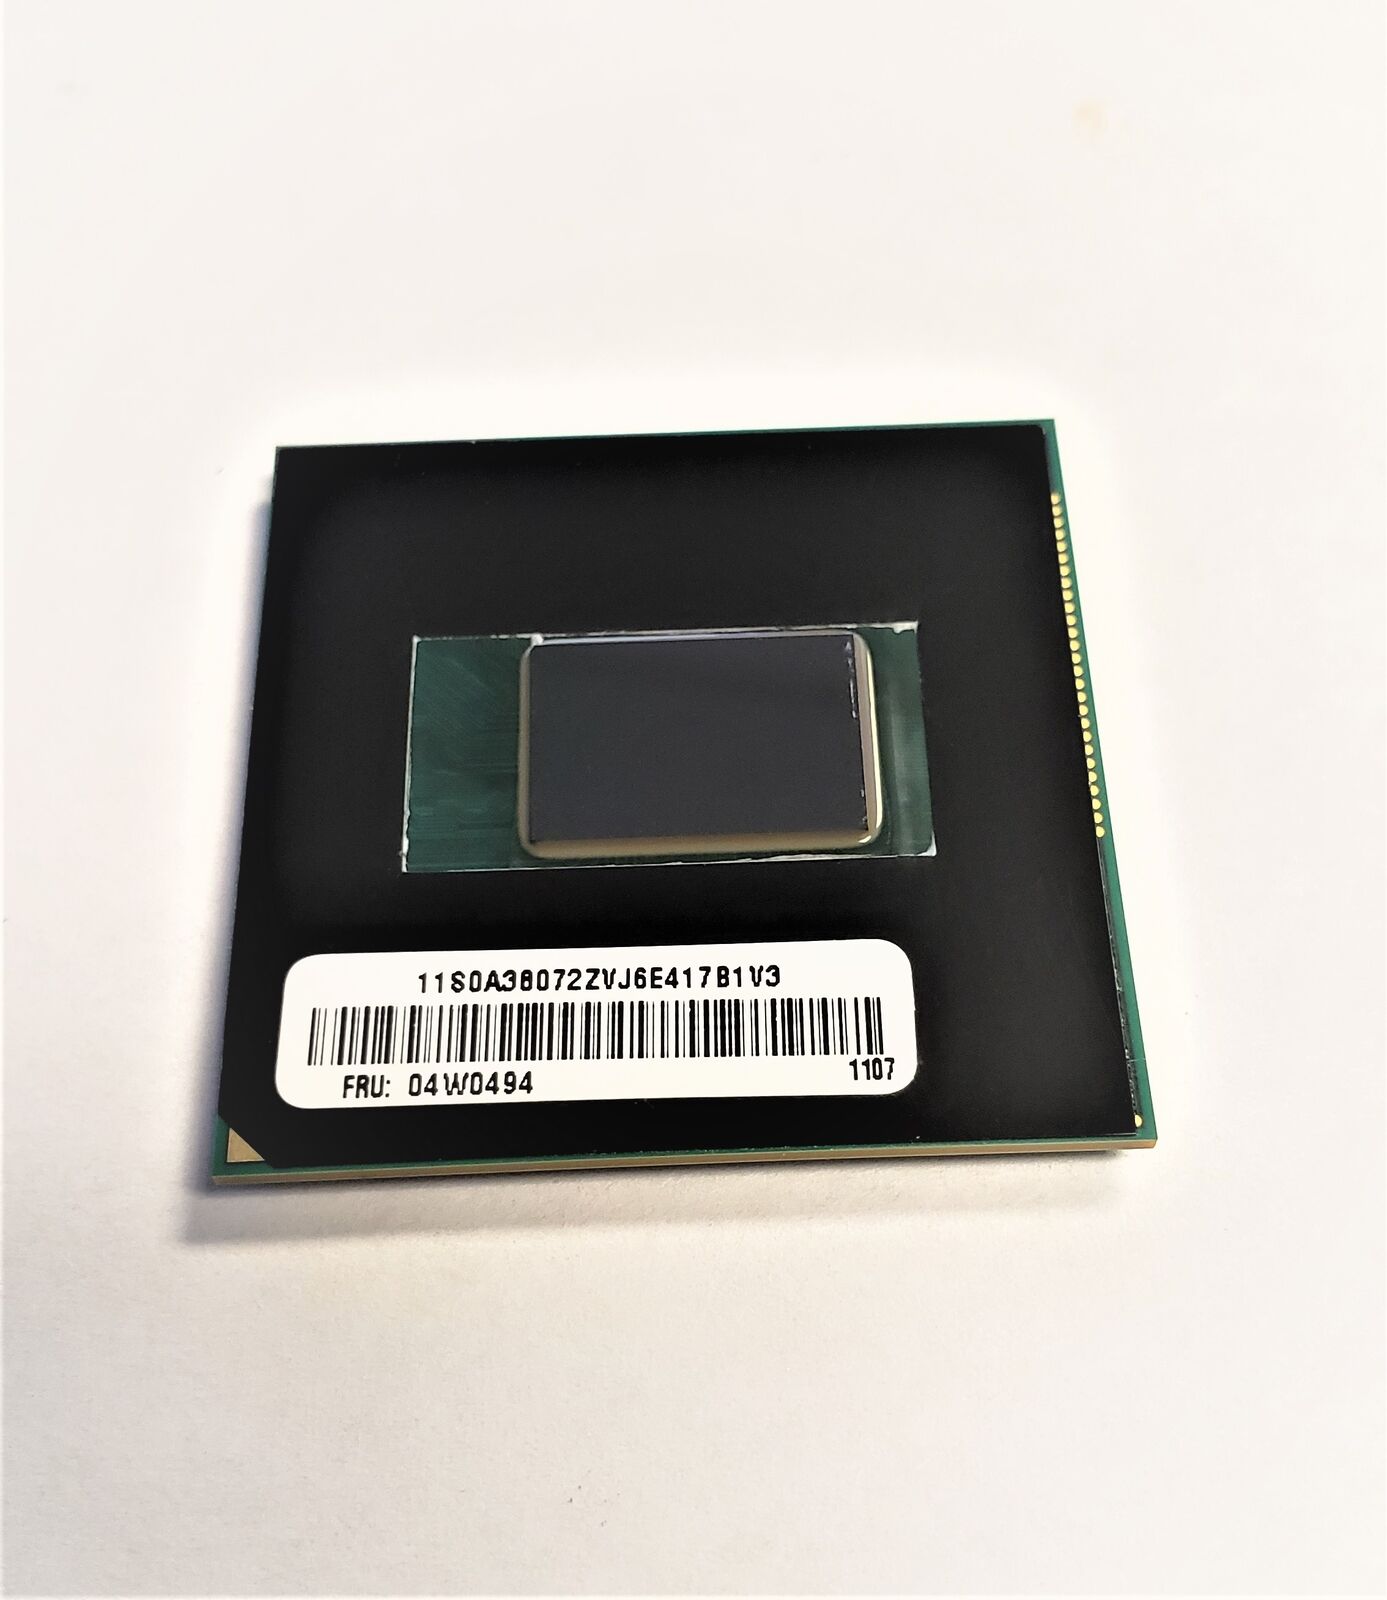 Intel Core i7-2620M 2.7GHz 4MB Socket G2 rPGA988B CPU Processor SR03F 04W0494